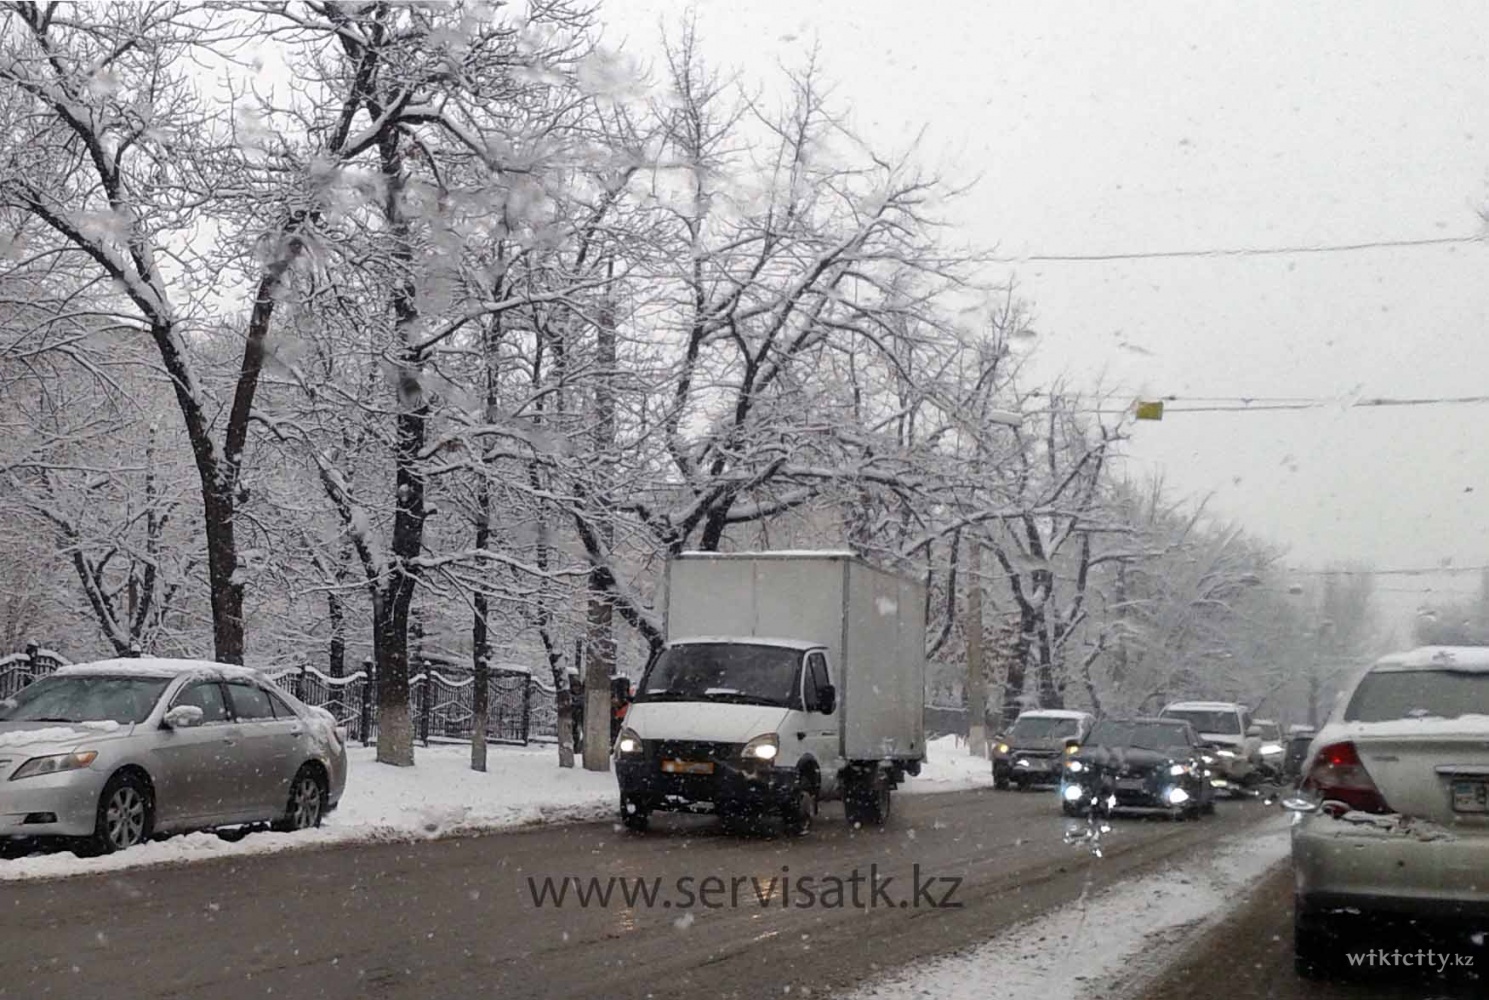 Фото Сервис АТК - Almaty